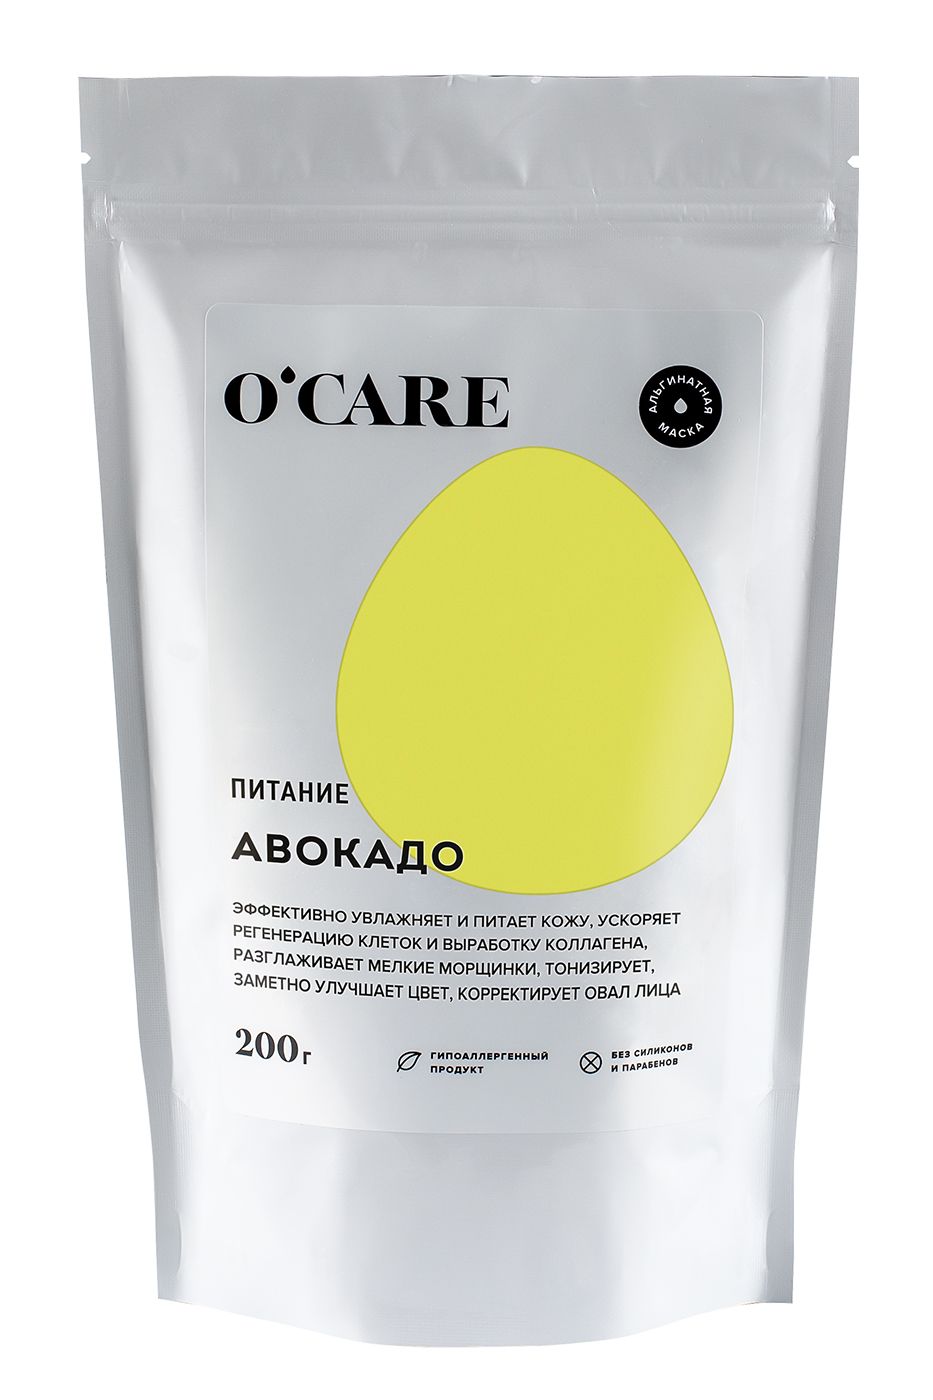 O'Care - Альгинатная маска с авокадо 200 г